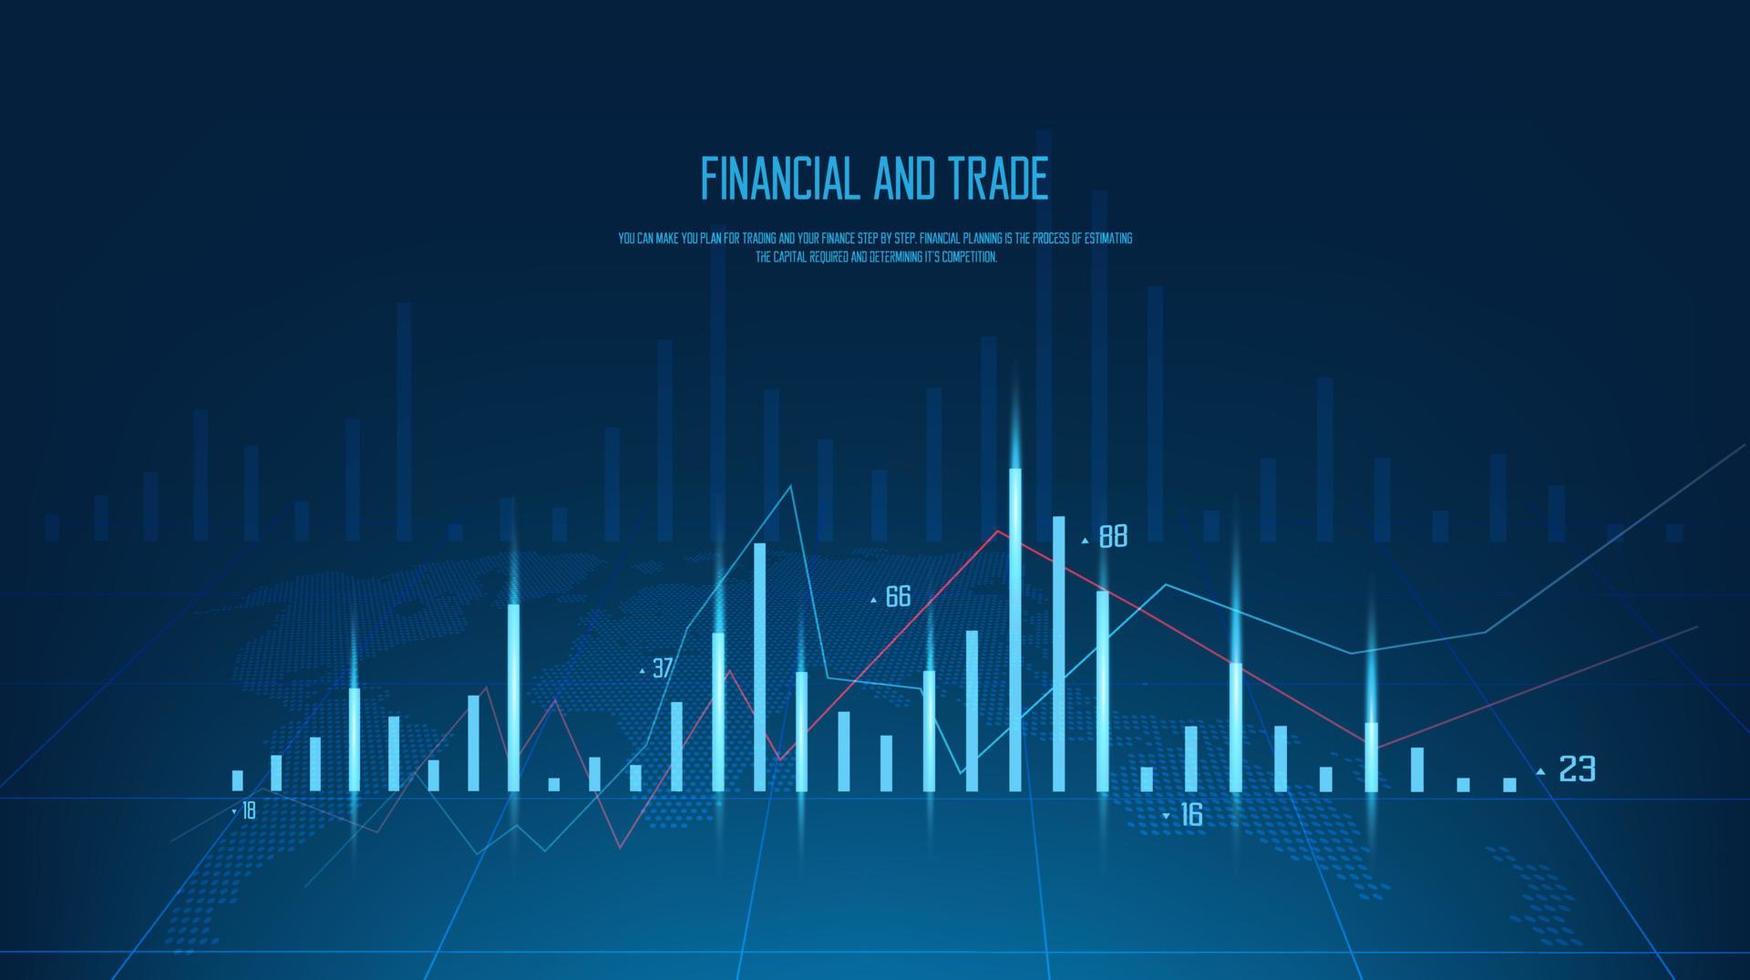 stock marknadsföra Diagram, en forex bar för handel, ljus blå Diagram begrepp lägga på ljus blå bakgrund för finansiell investering, ekonomisk trender Diagram, vektor illustration.